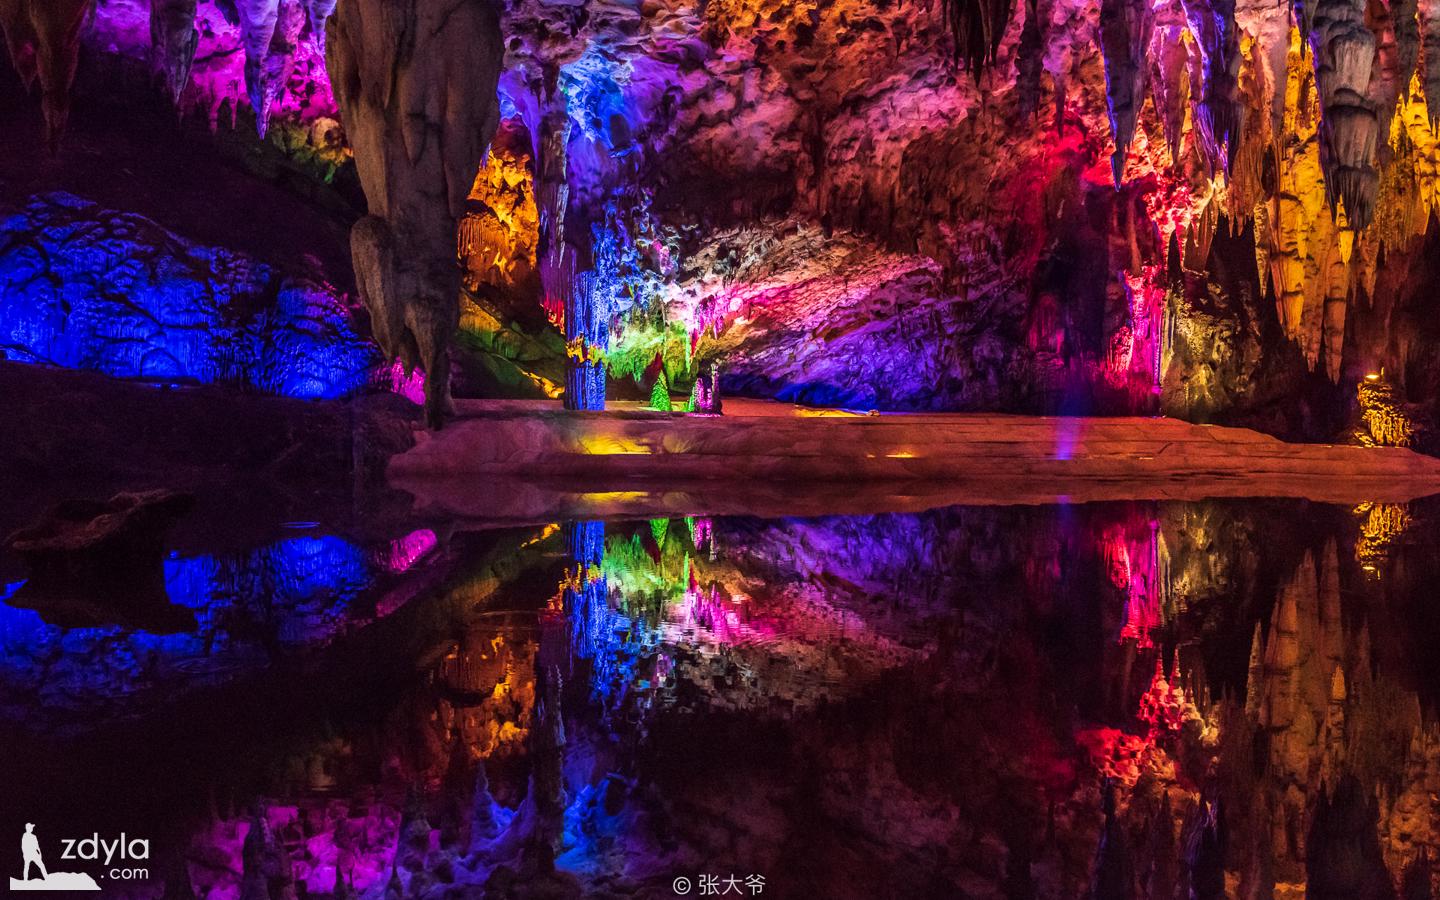 Zhijin cave